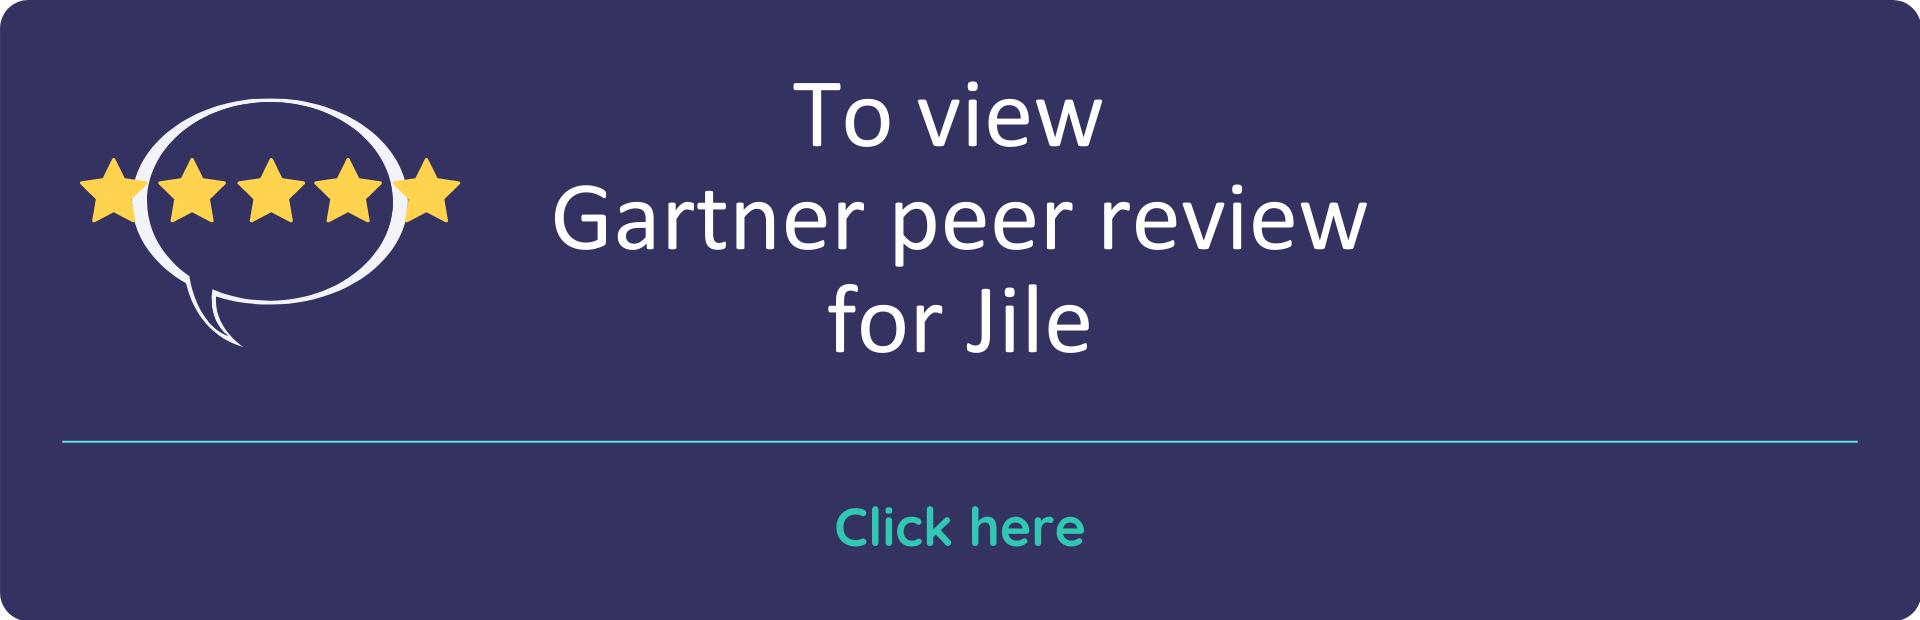 Gartner Peer Review for Jile